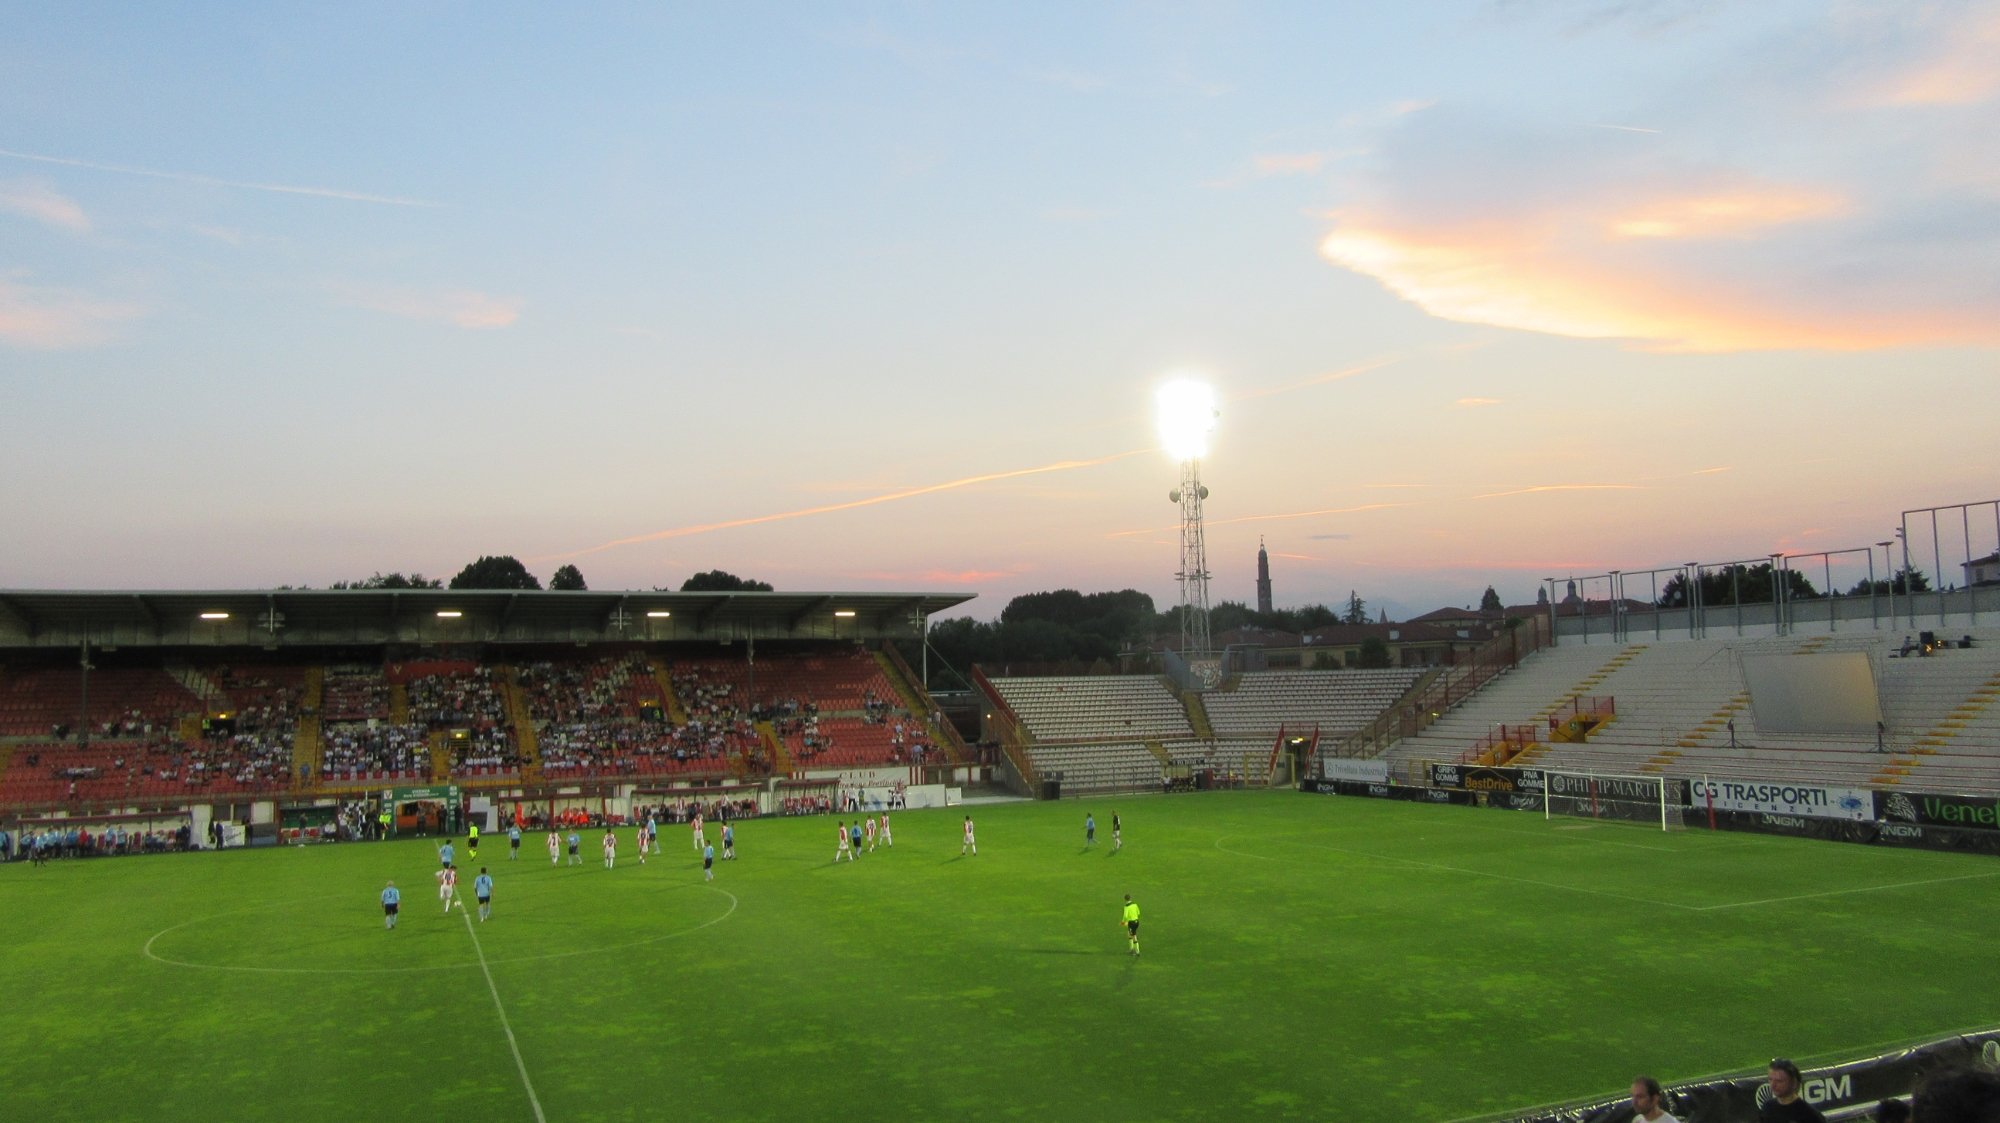 Stadio Romeo Menti